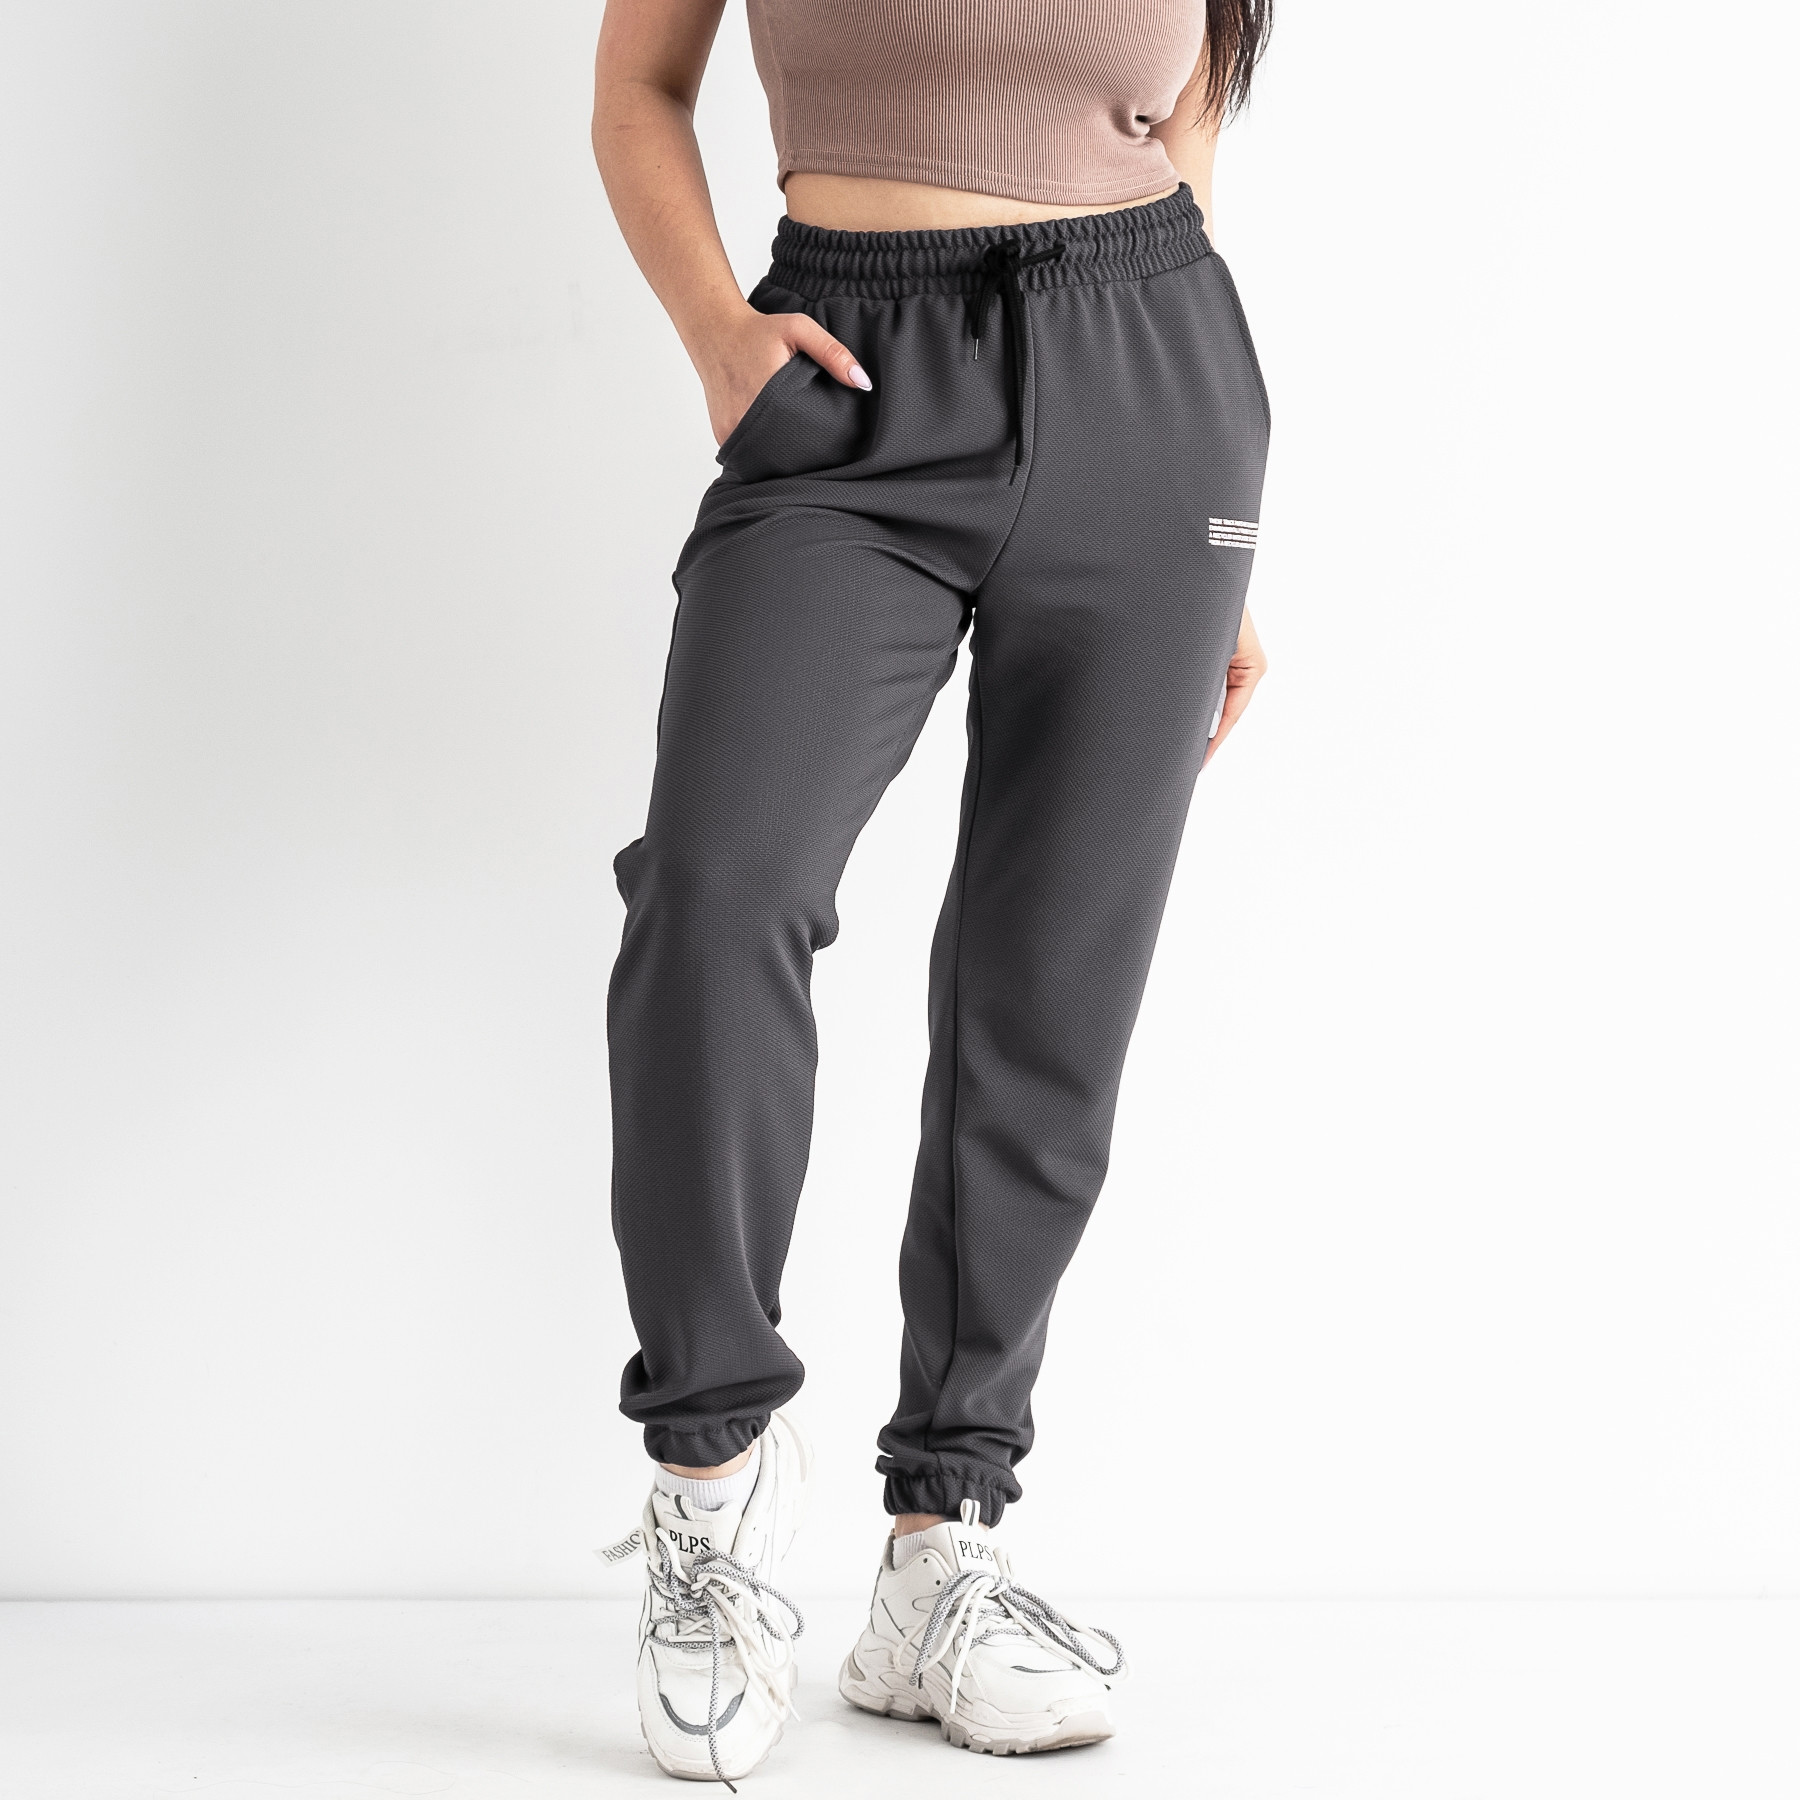 1105-13 СЕРЫЕ спортивные брюки женские (4 ед размеры: S.M.L.XL)